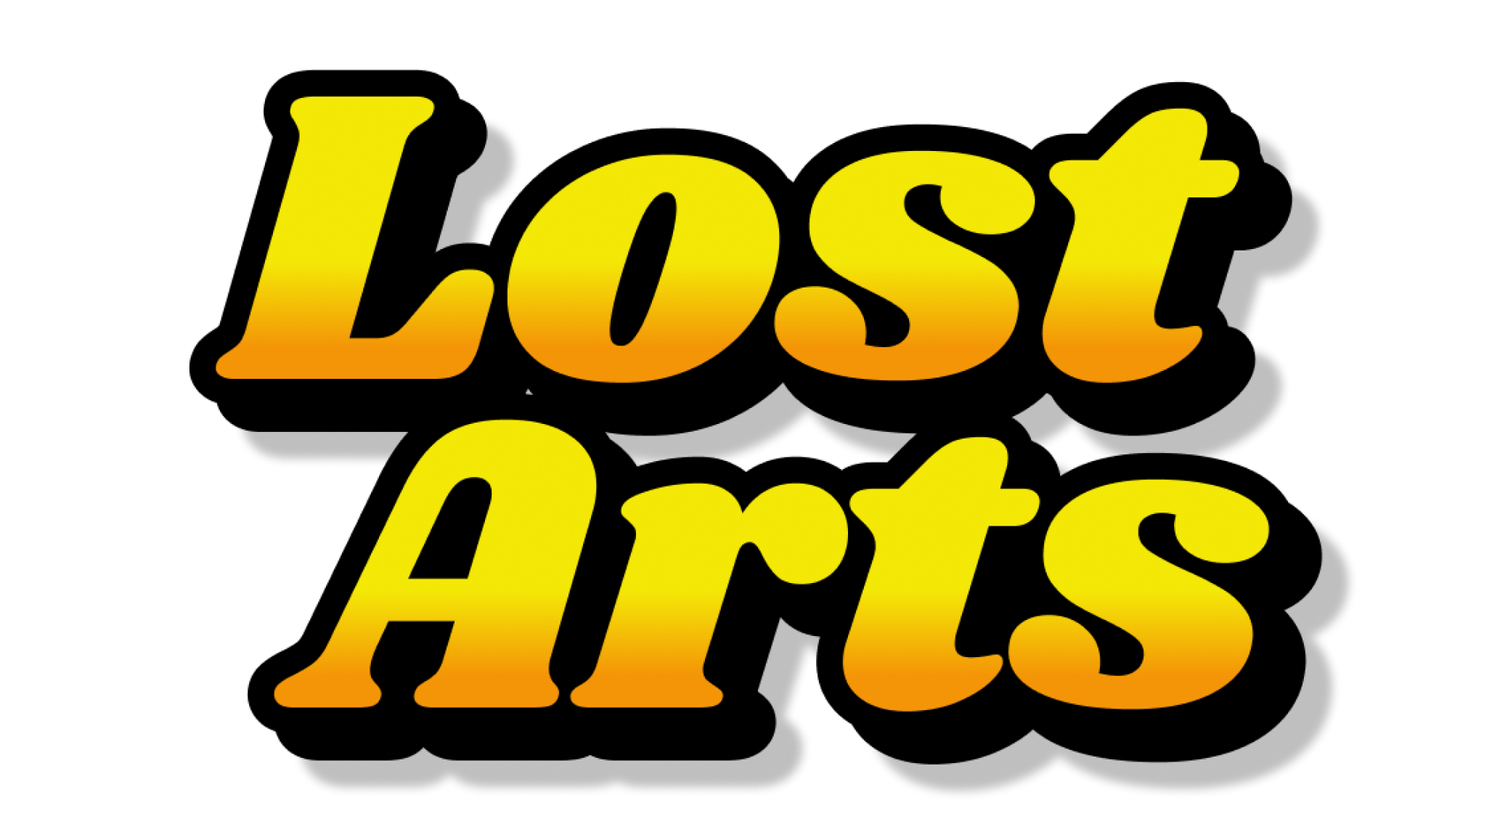 Lost Arts